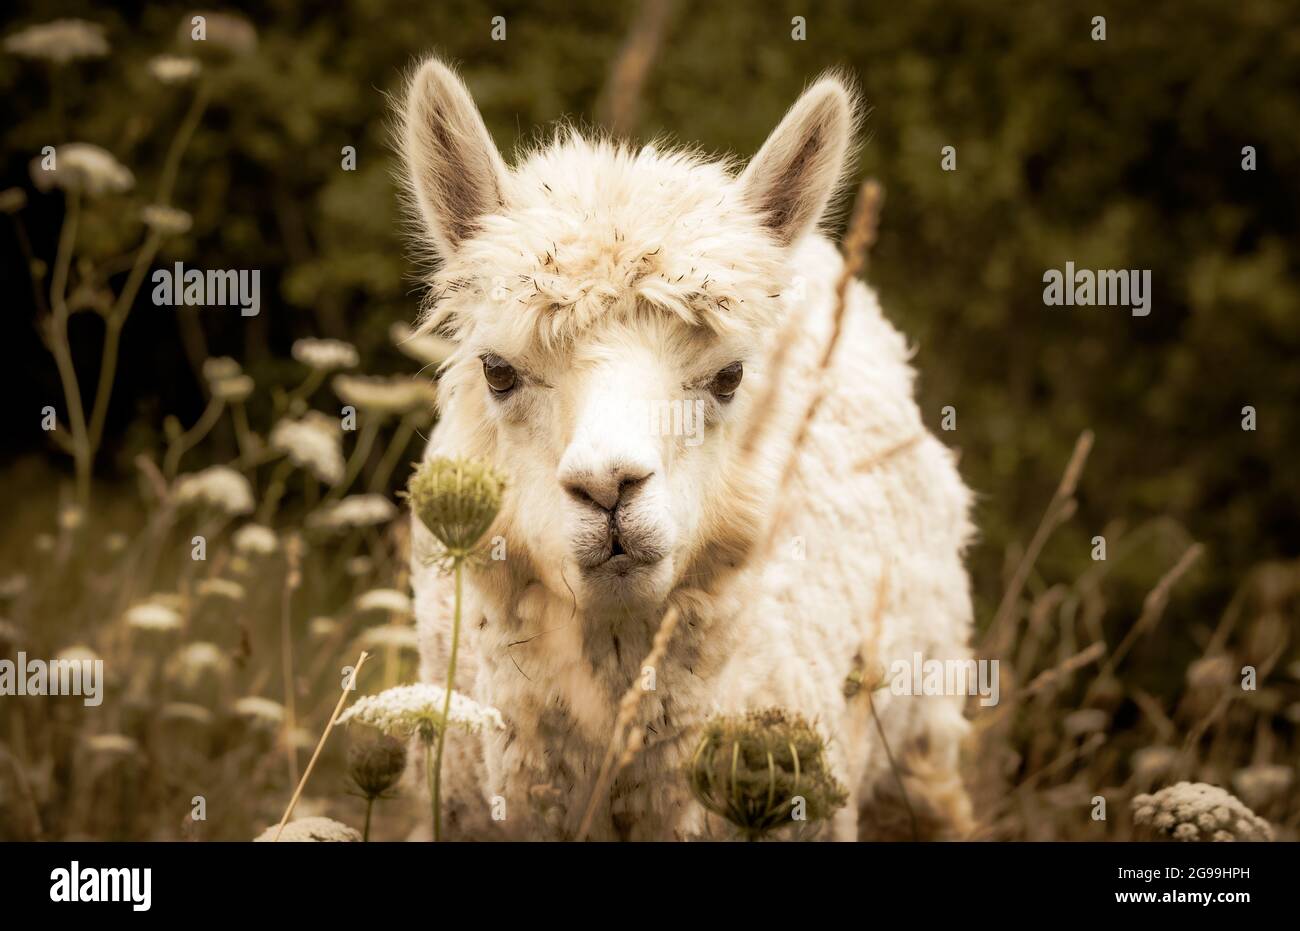 Alpaca in fattoria, all'aperto su un pascolo, erba alta, animale che guarda in macchina fotografica. Foto Stock